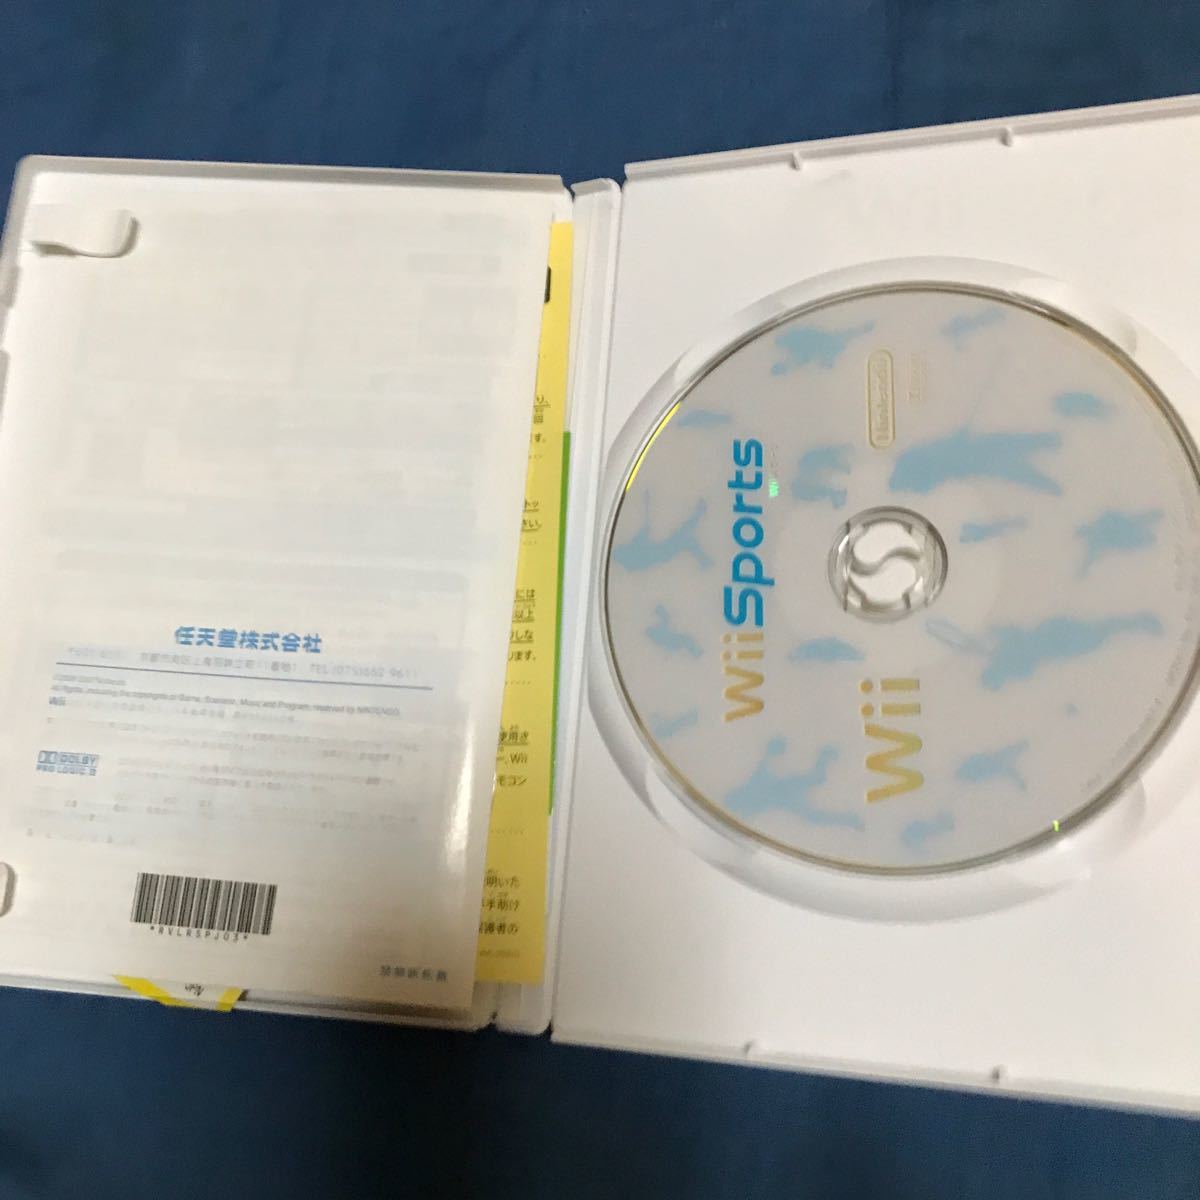 ドラゴンクエストX 目覚めし五つの種族 オンライン/Wii Sports!Wiiソフト２本セット販売!